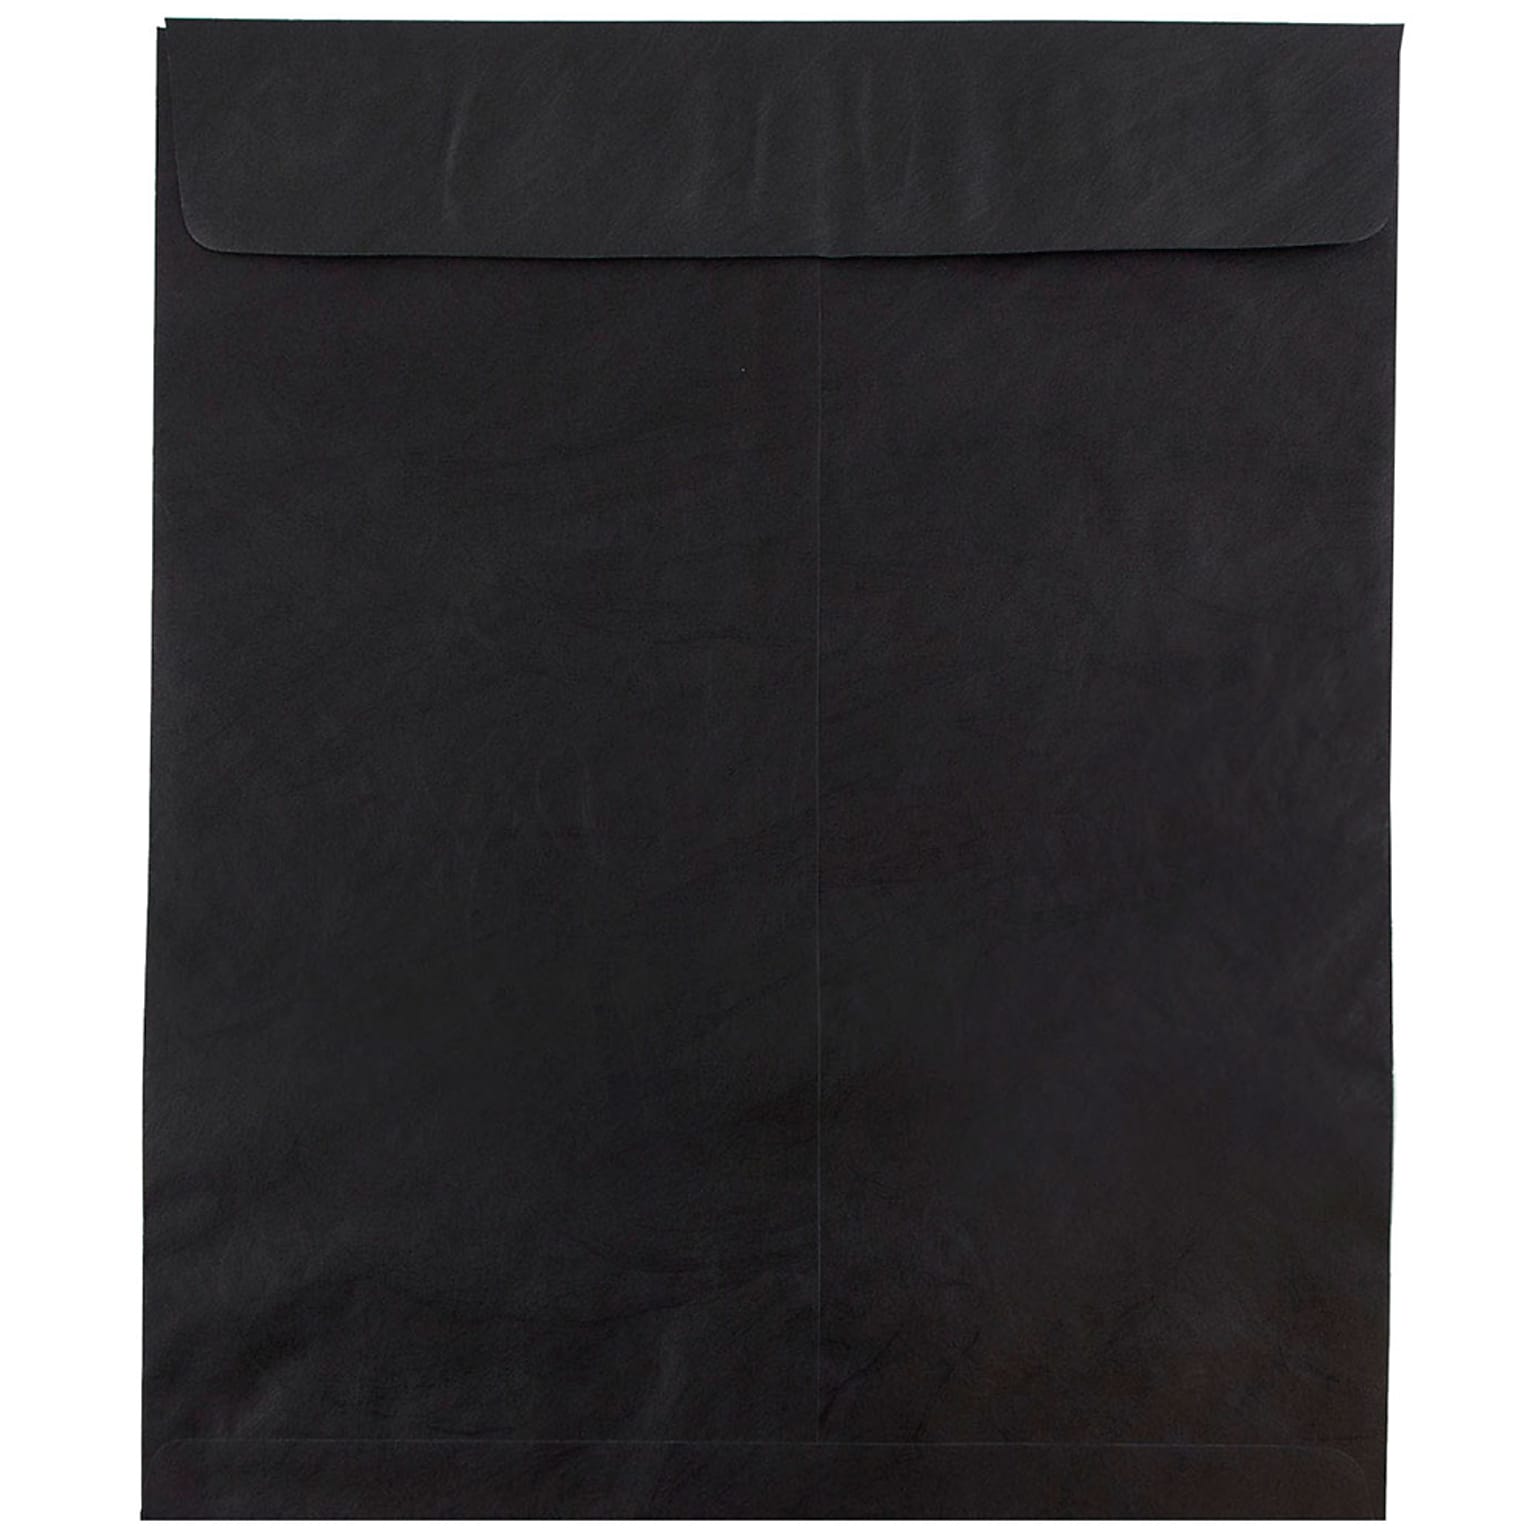 JAM Paper Tear-Proof Tyvek Open End Catalog Envelopes, 11.5 x 14.5, Black, 25/Pack (V021386)